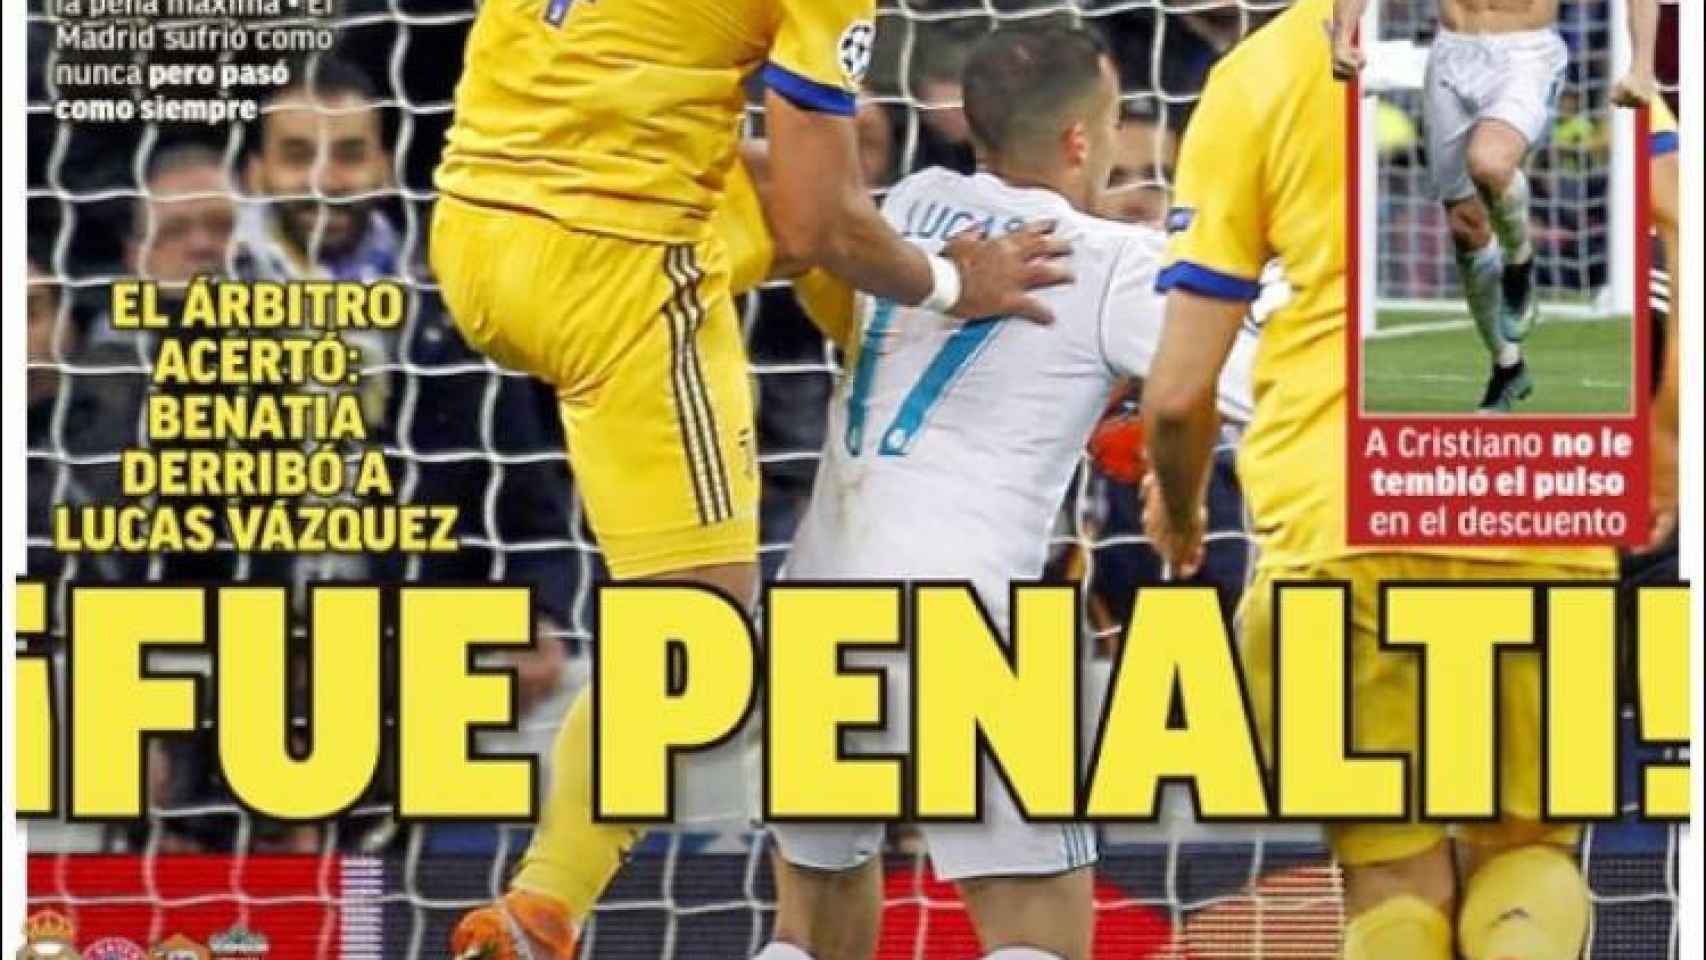 '¡Fue penalti!', titula MARCA sobre la gran polémica del Real Madrid - Juventus.